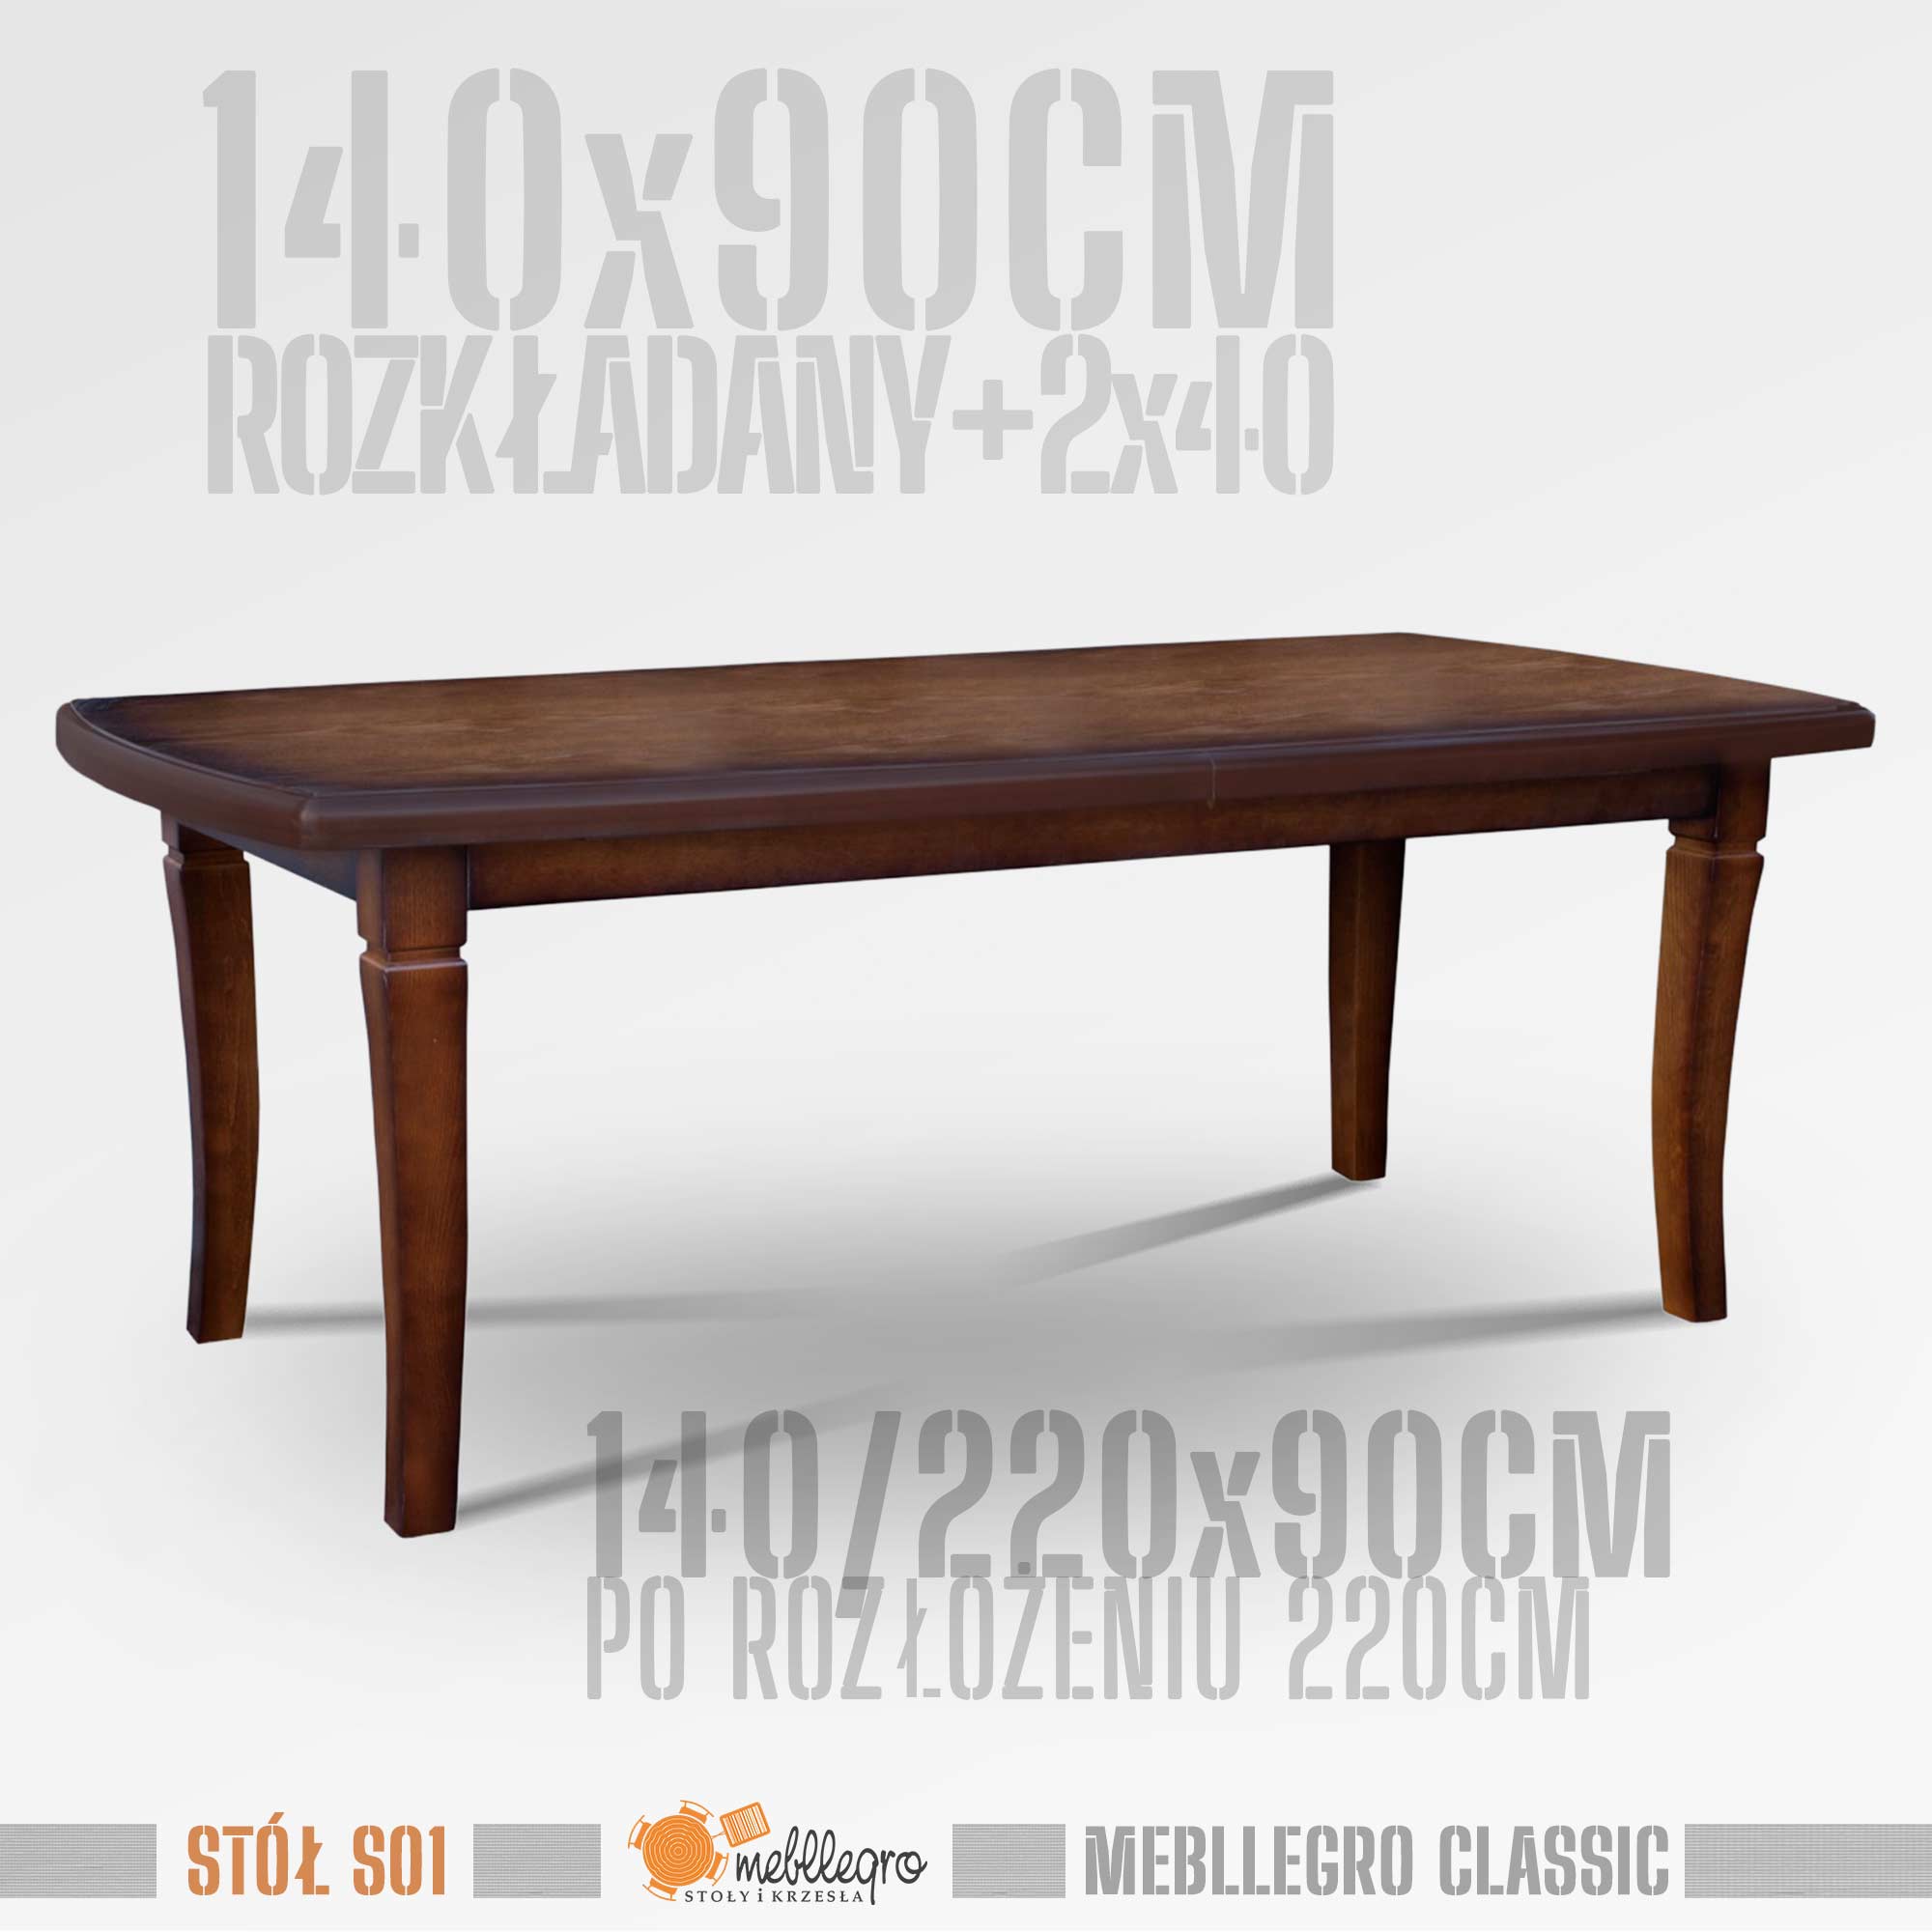 Stół drewniany S01 wymiary stołu 140x90 rozkładany do 220cm / MEBLLEGRO CLASSIC